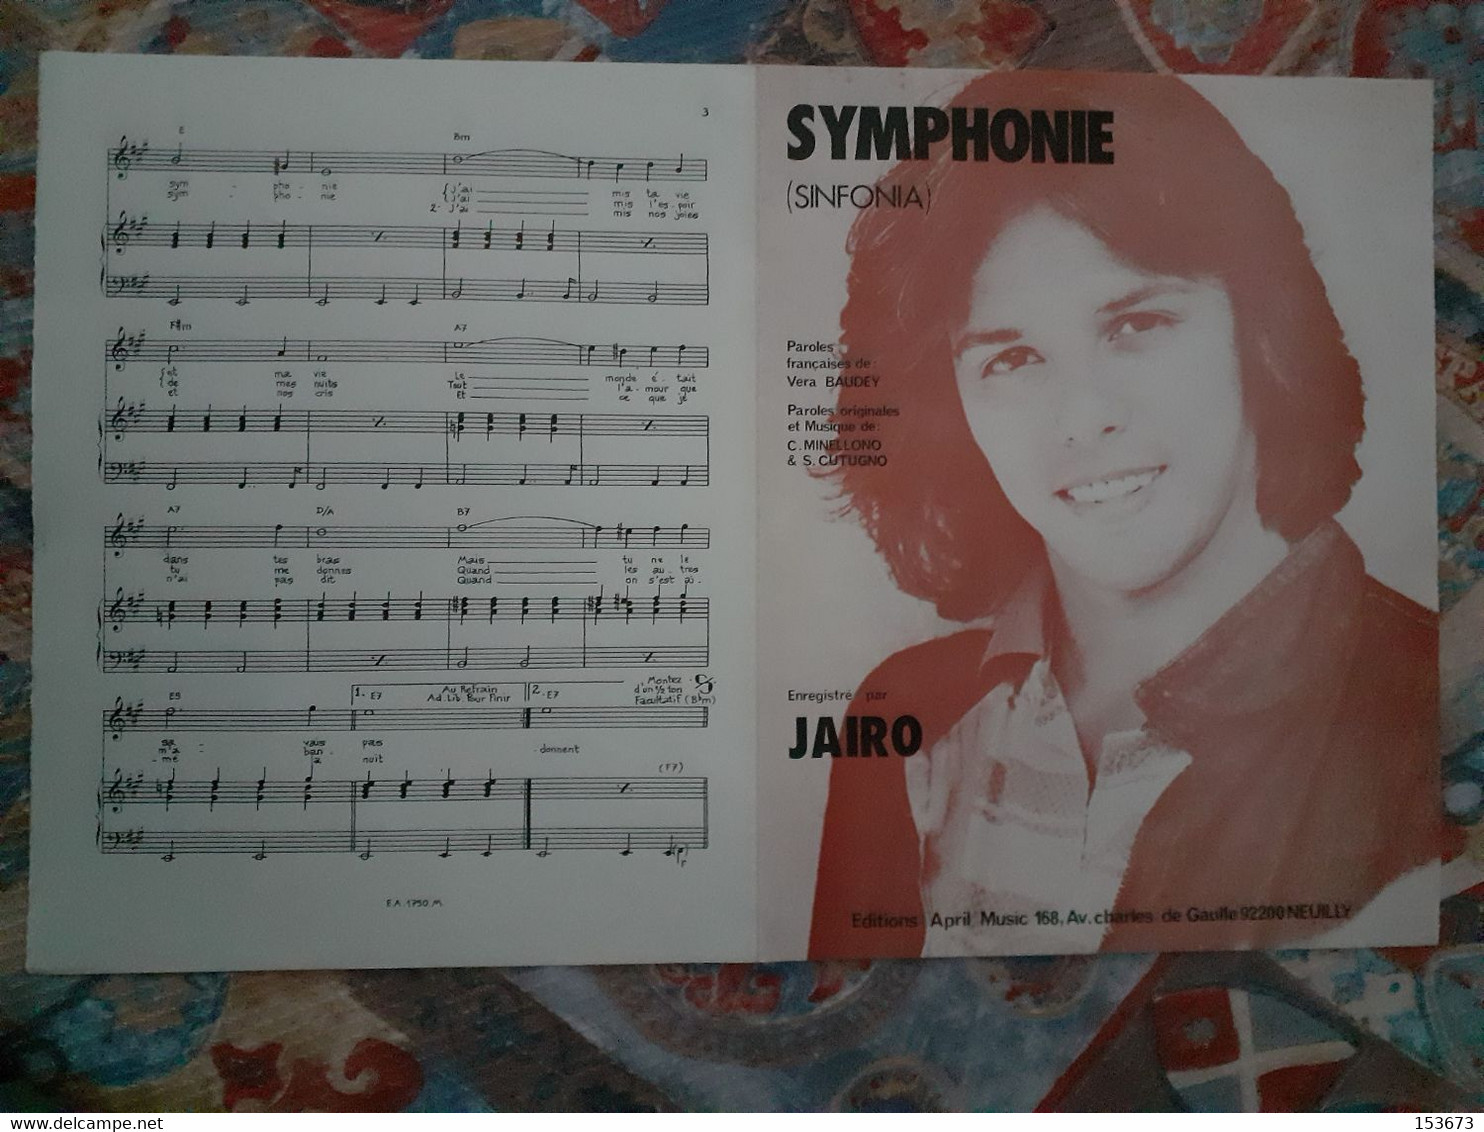 Partition "SYMPHONIE (Sinfonia)" éditions April Music - Neuilly 1981, Enregistré Par JAIRO. - Vocals